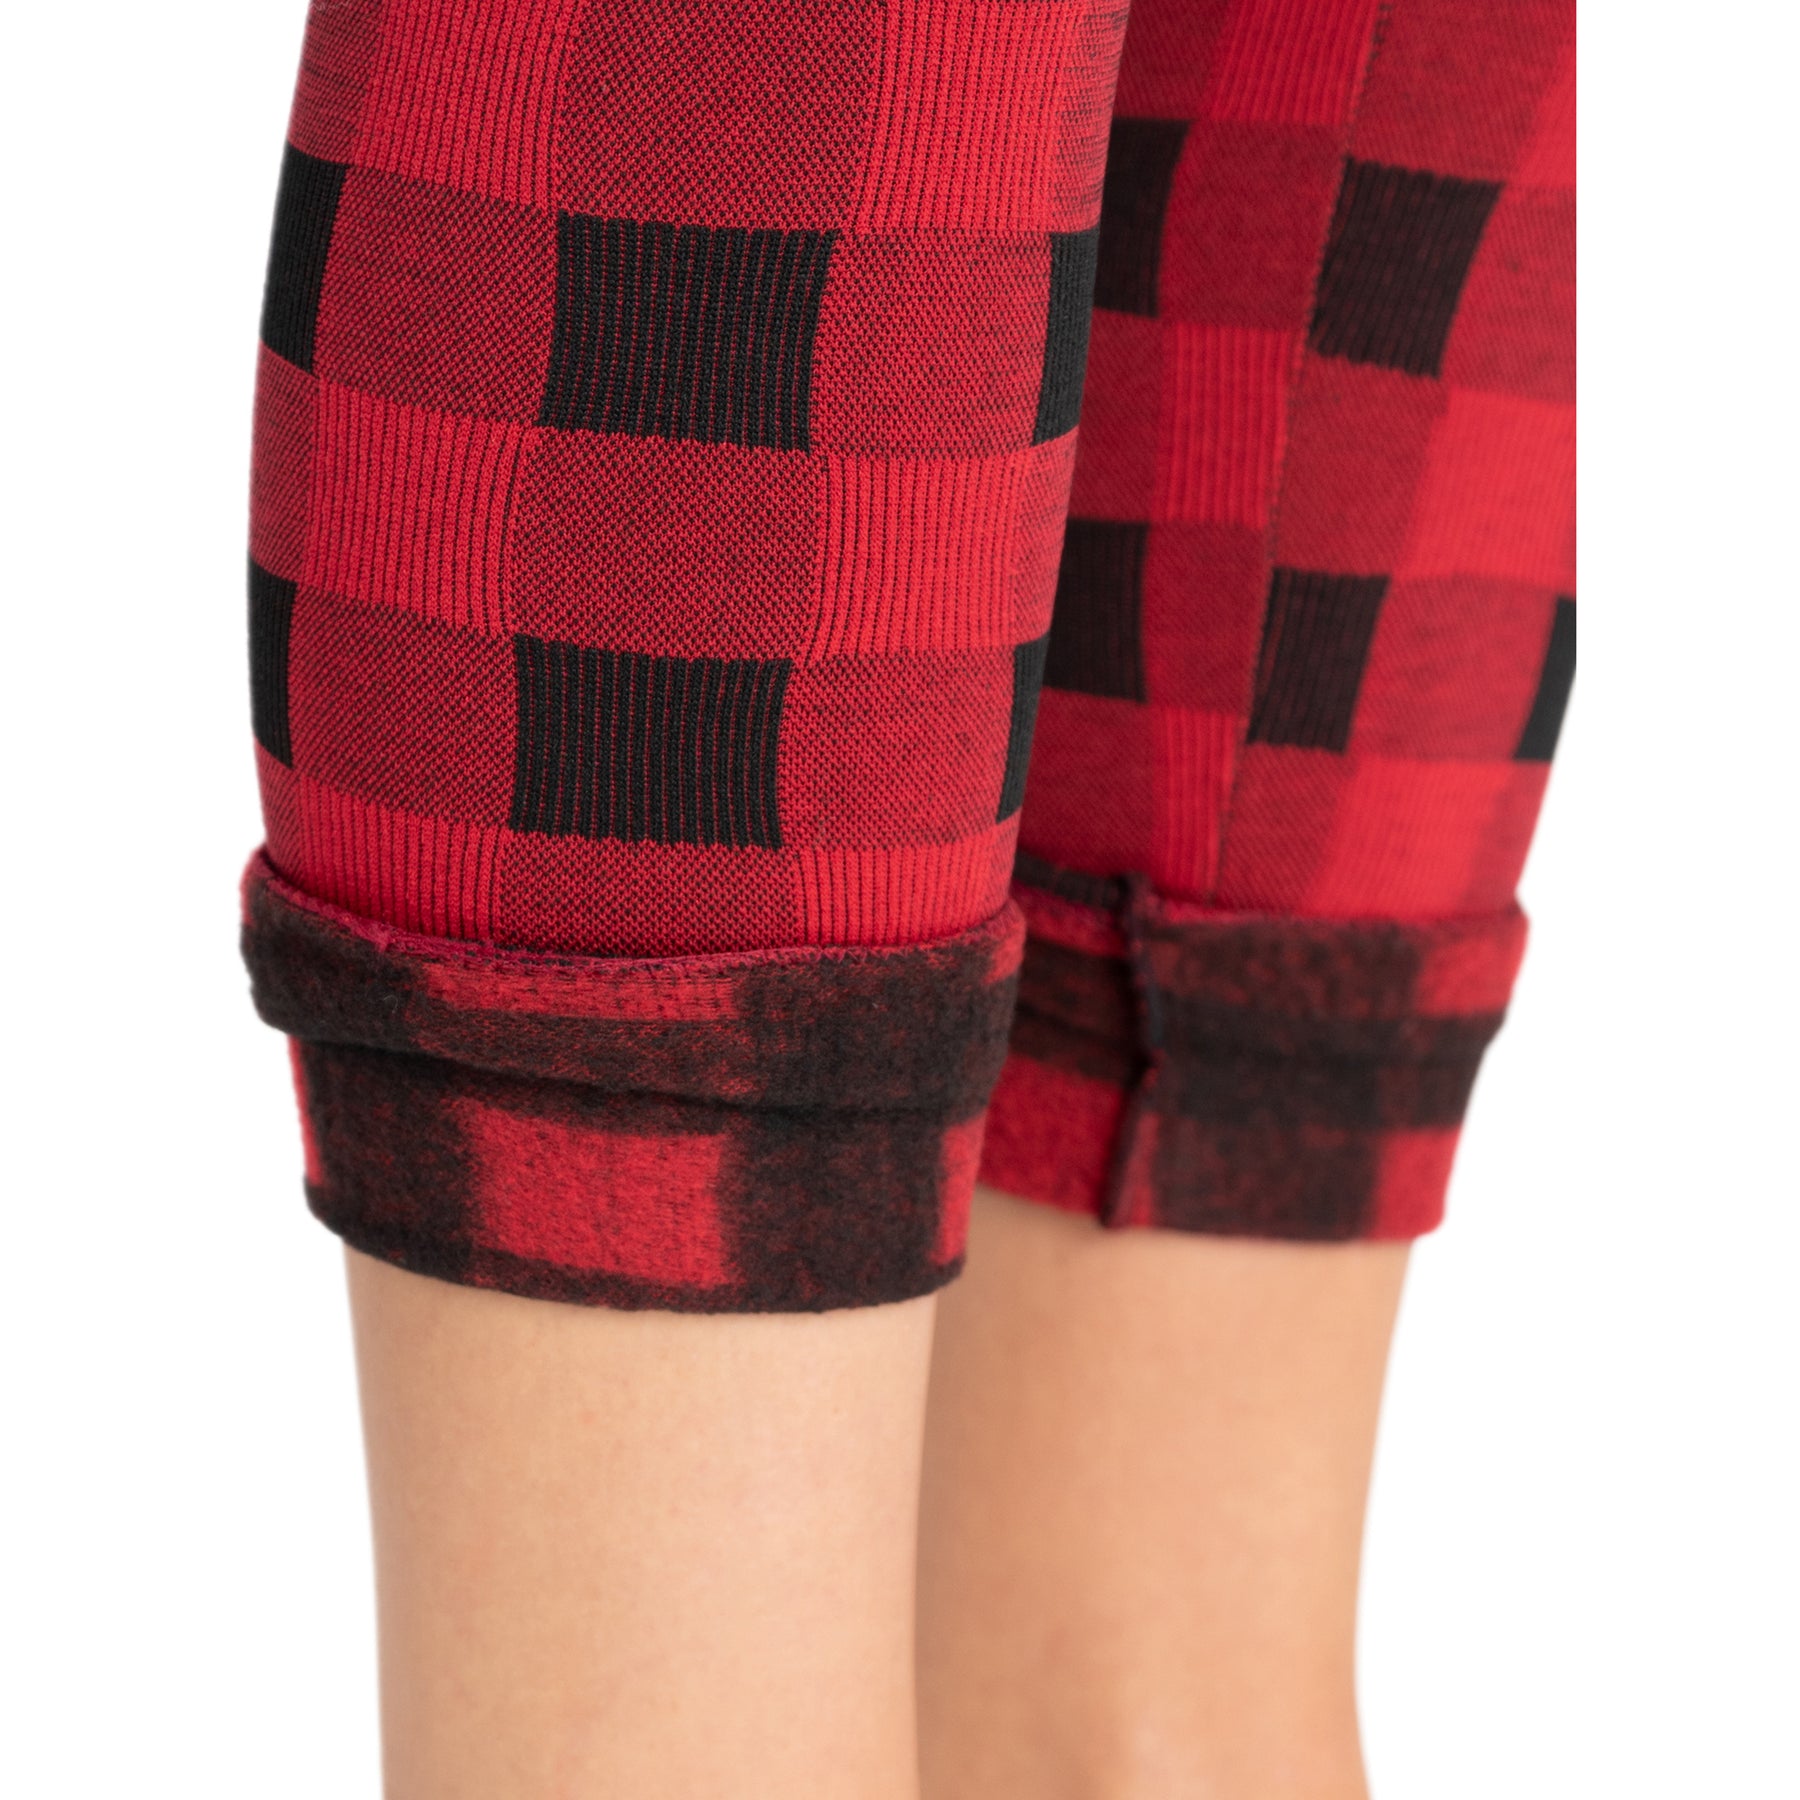 Buy Fllik Winter Full Legs Warm Thick Fur Lined Fleece Leggings